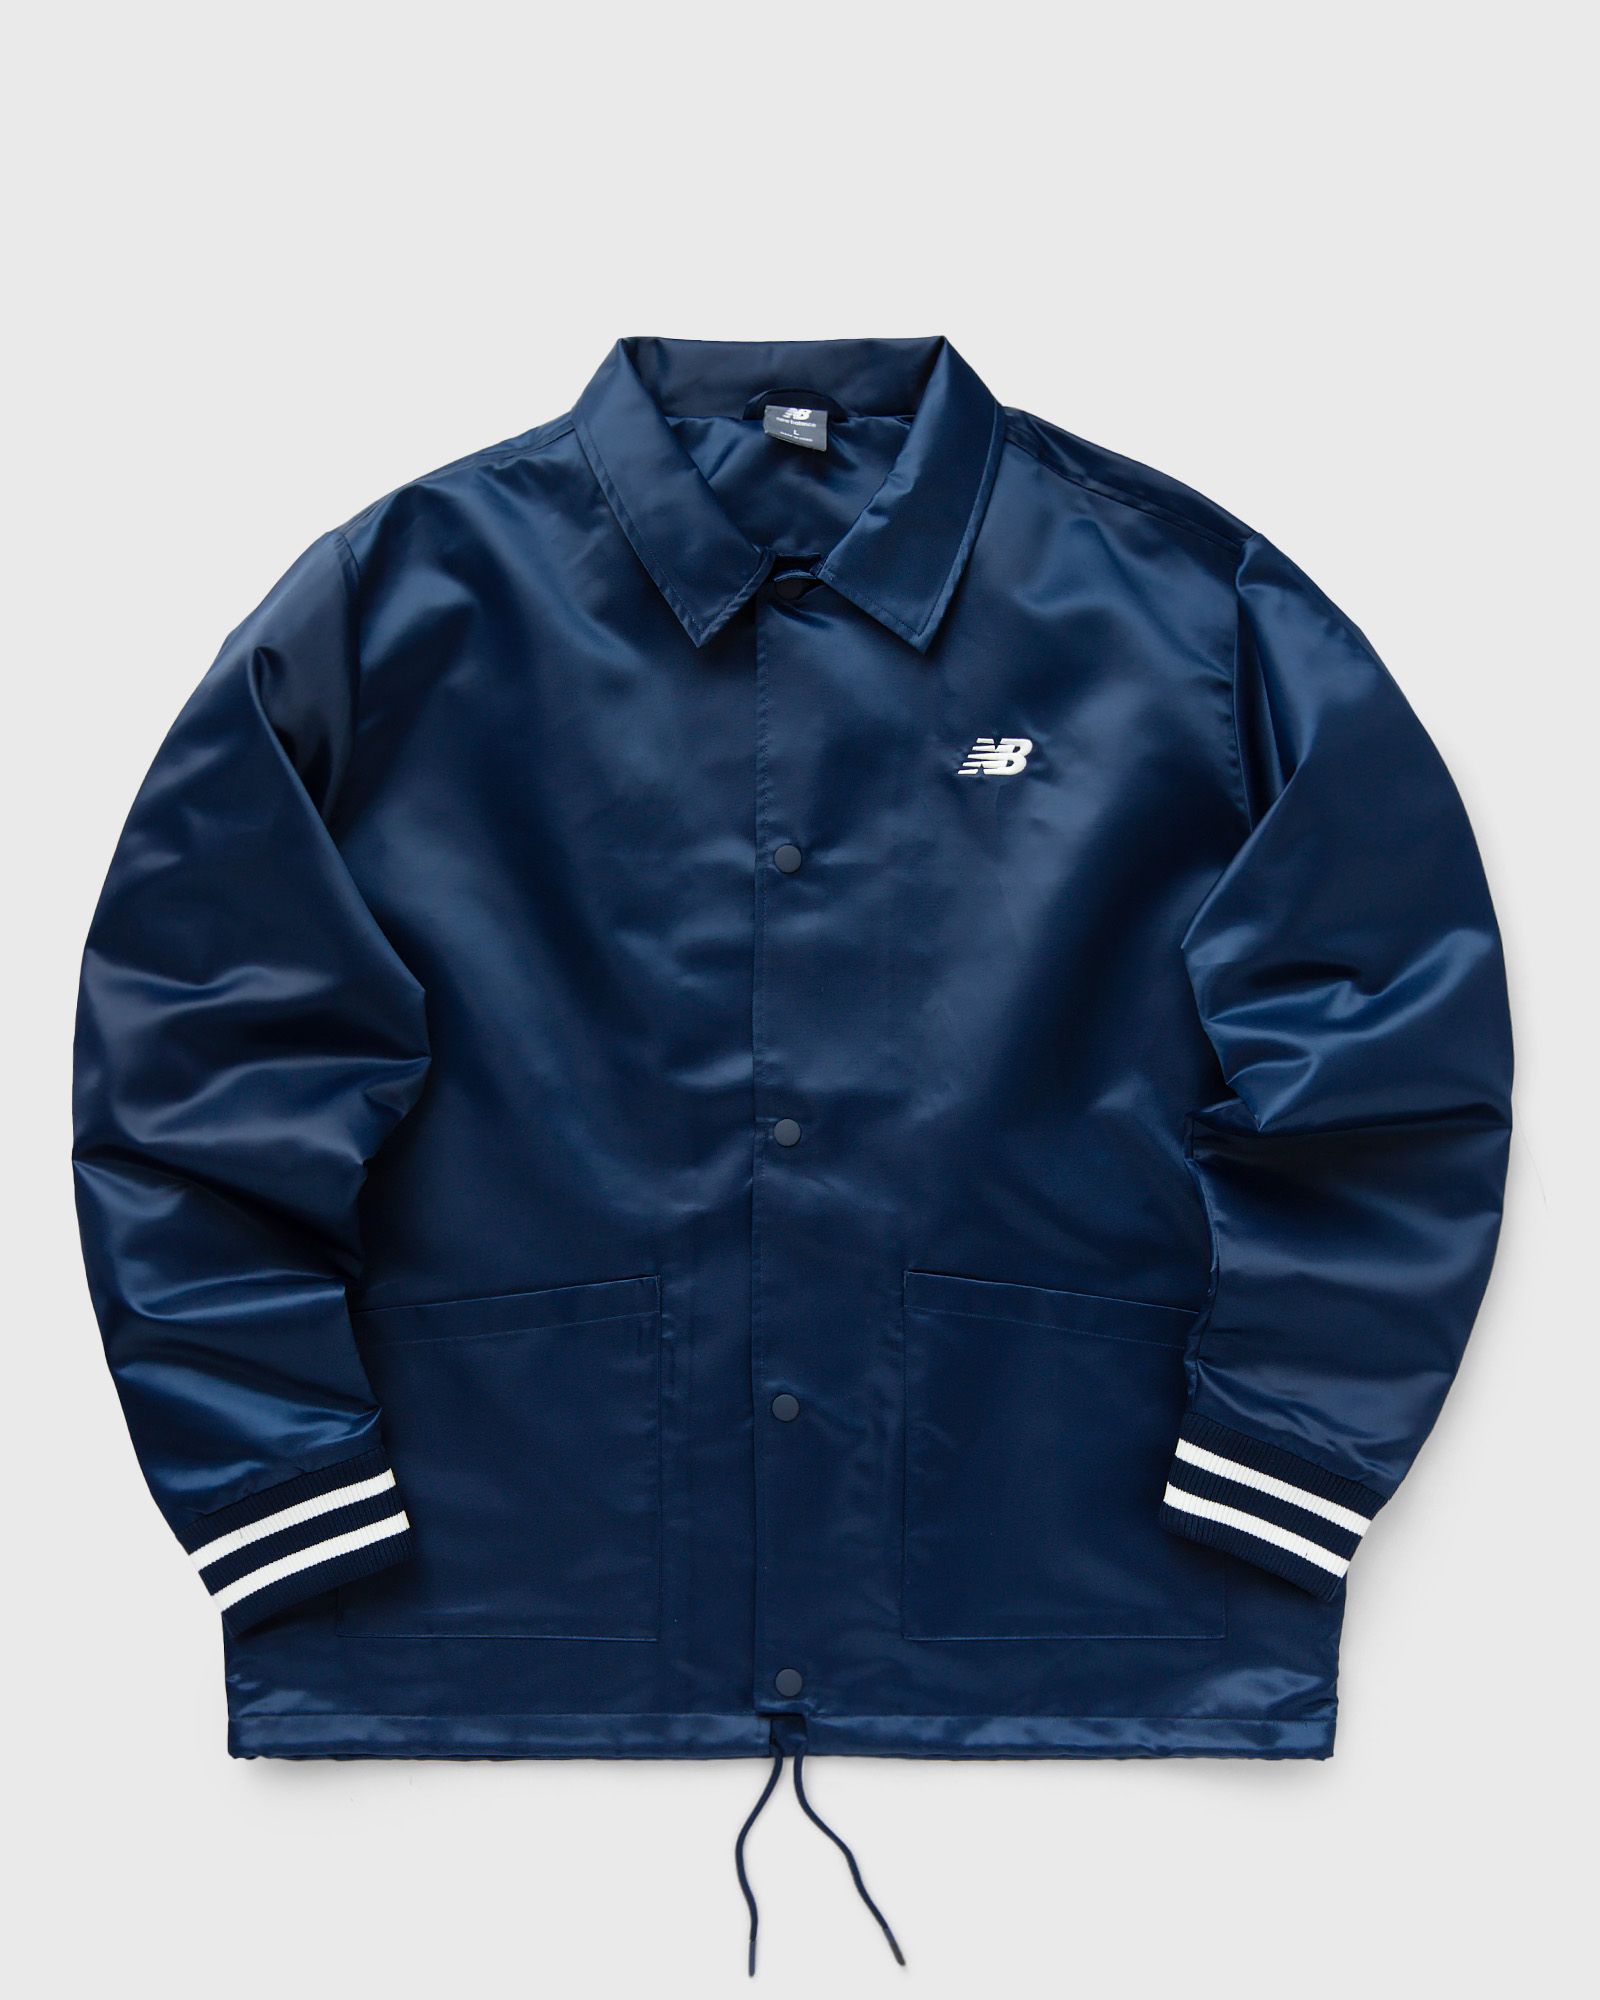 New Balance - sportswear greatest hits coaches jacket men overshirts|windbreaker blue in größe:l